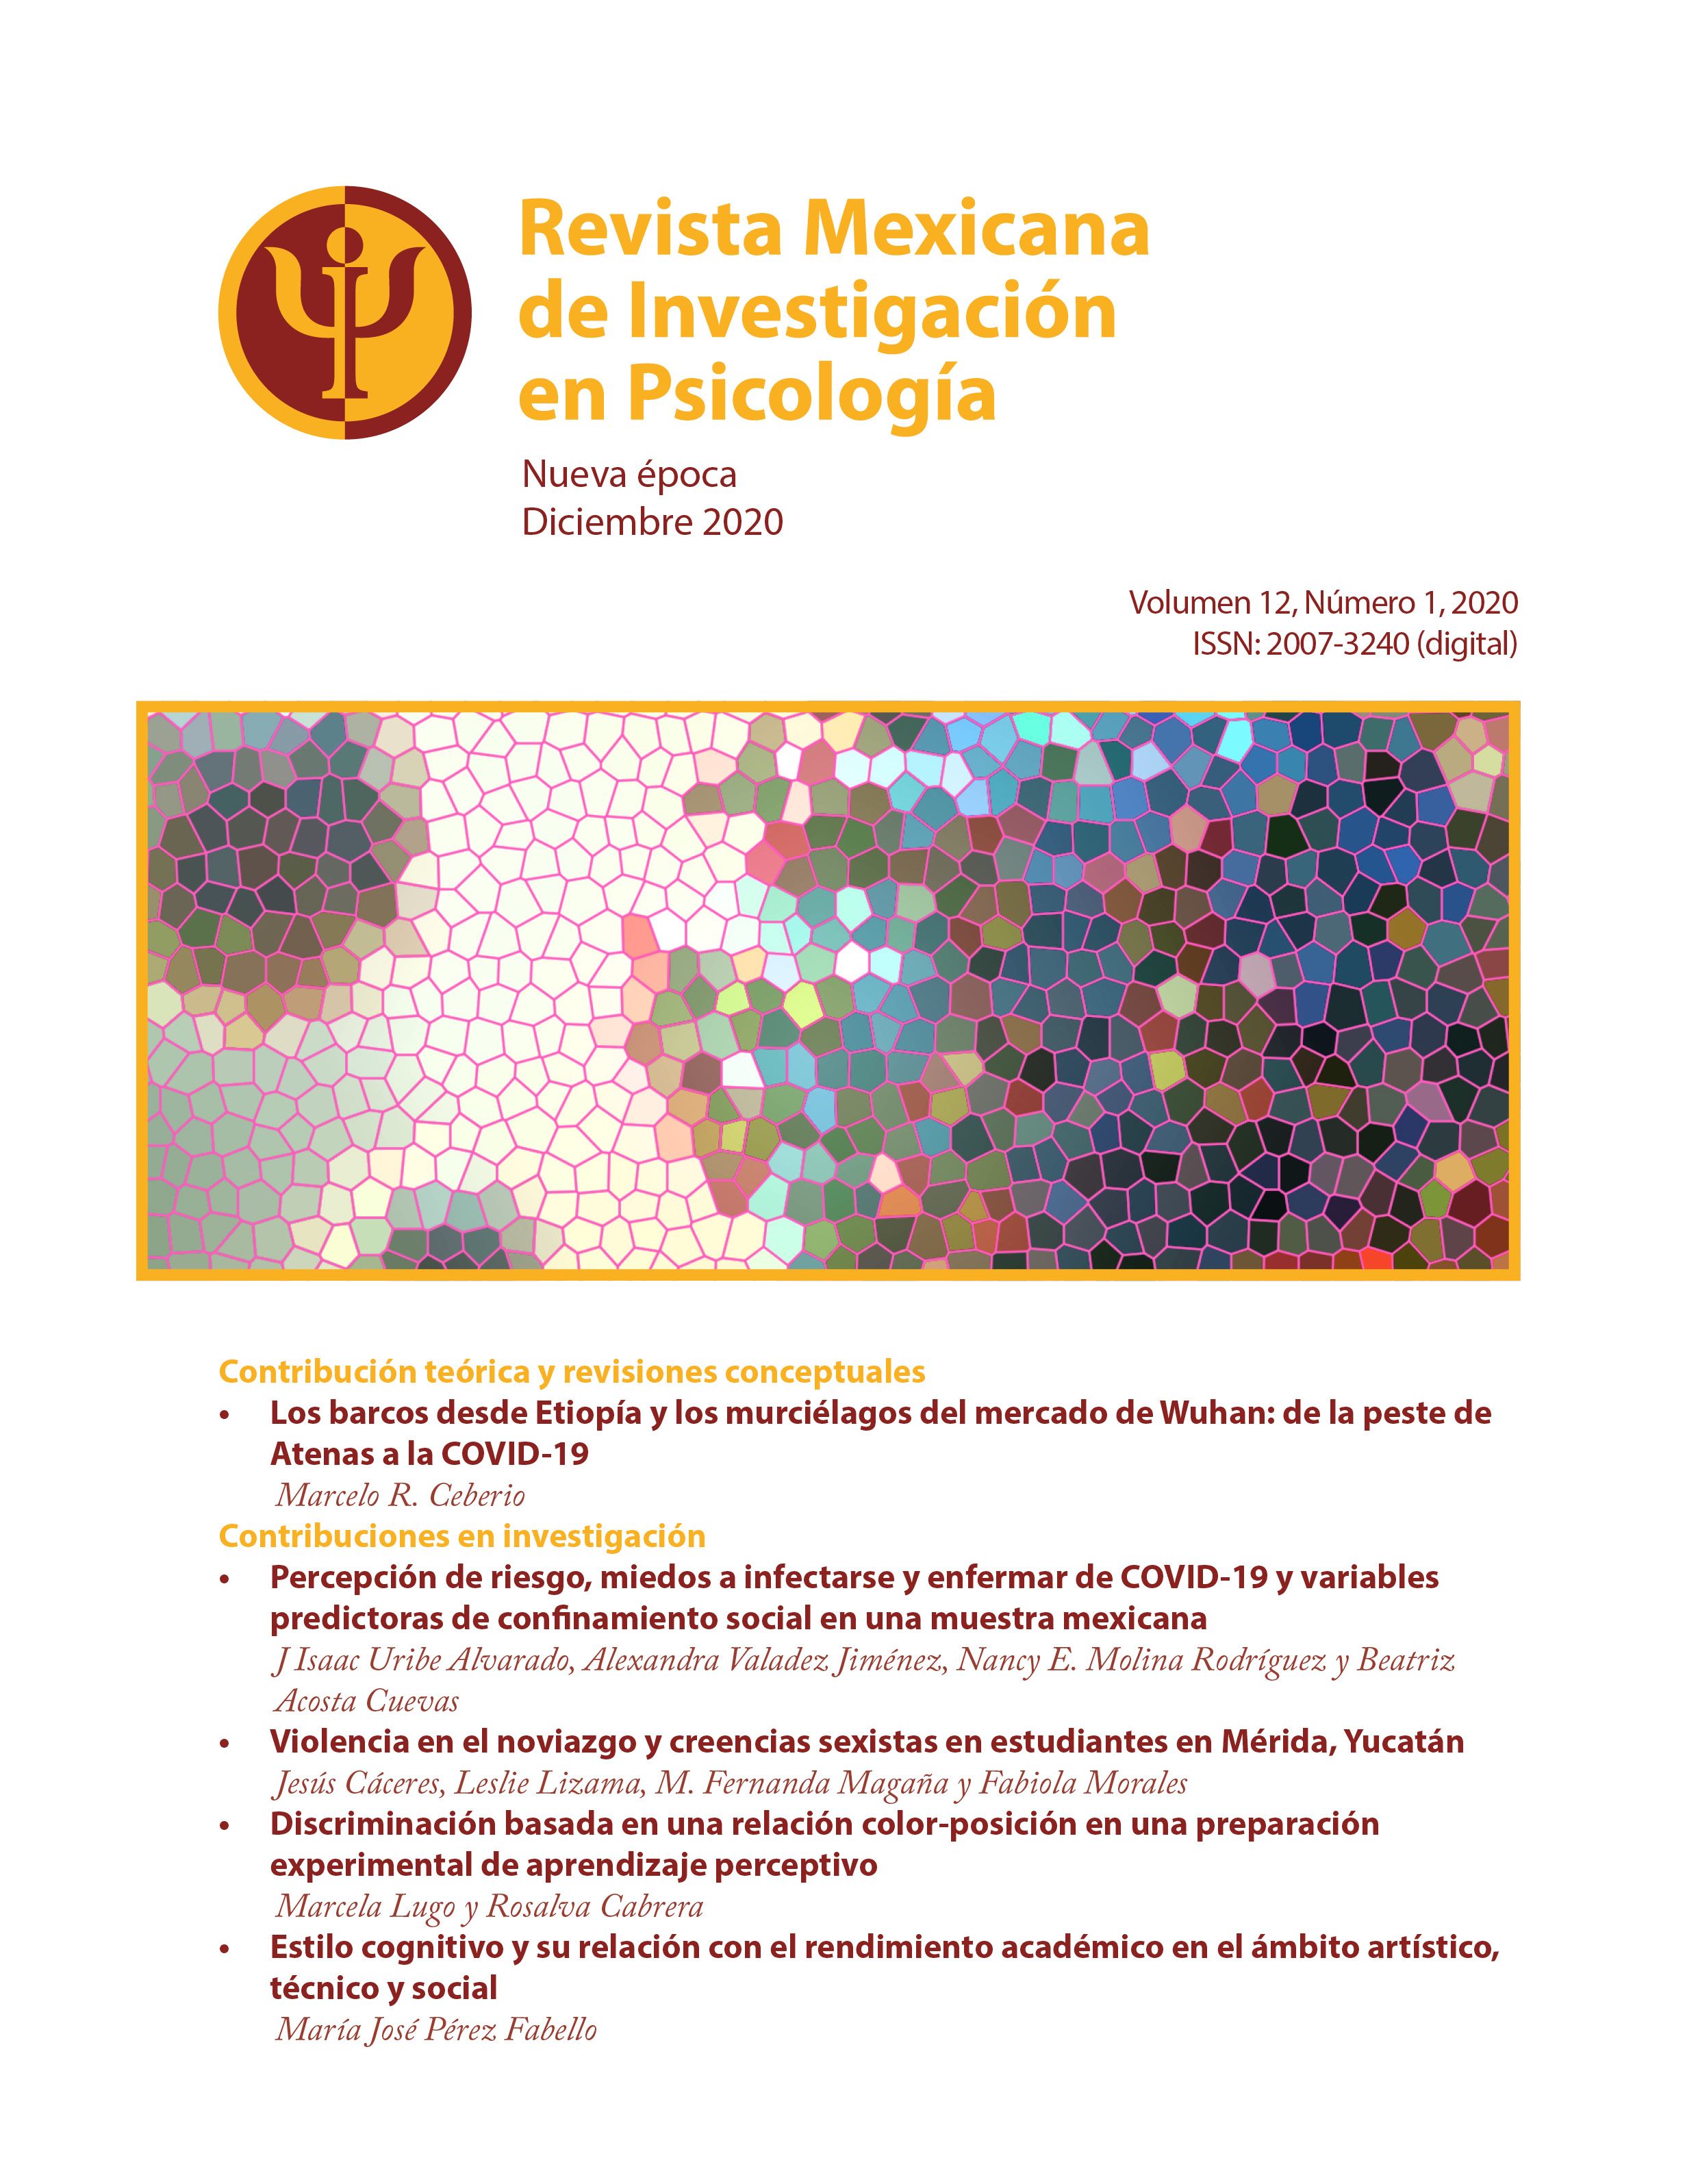 					Ver Vol. 12 Núm. 1 (2020): Revista Mexicana de Investigación en Psicología, Nueva Época; Vol. 12, No. 1, 2020
				